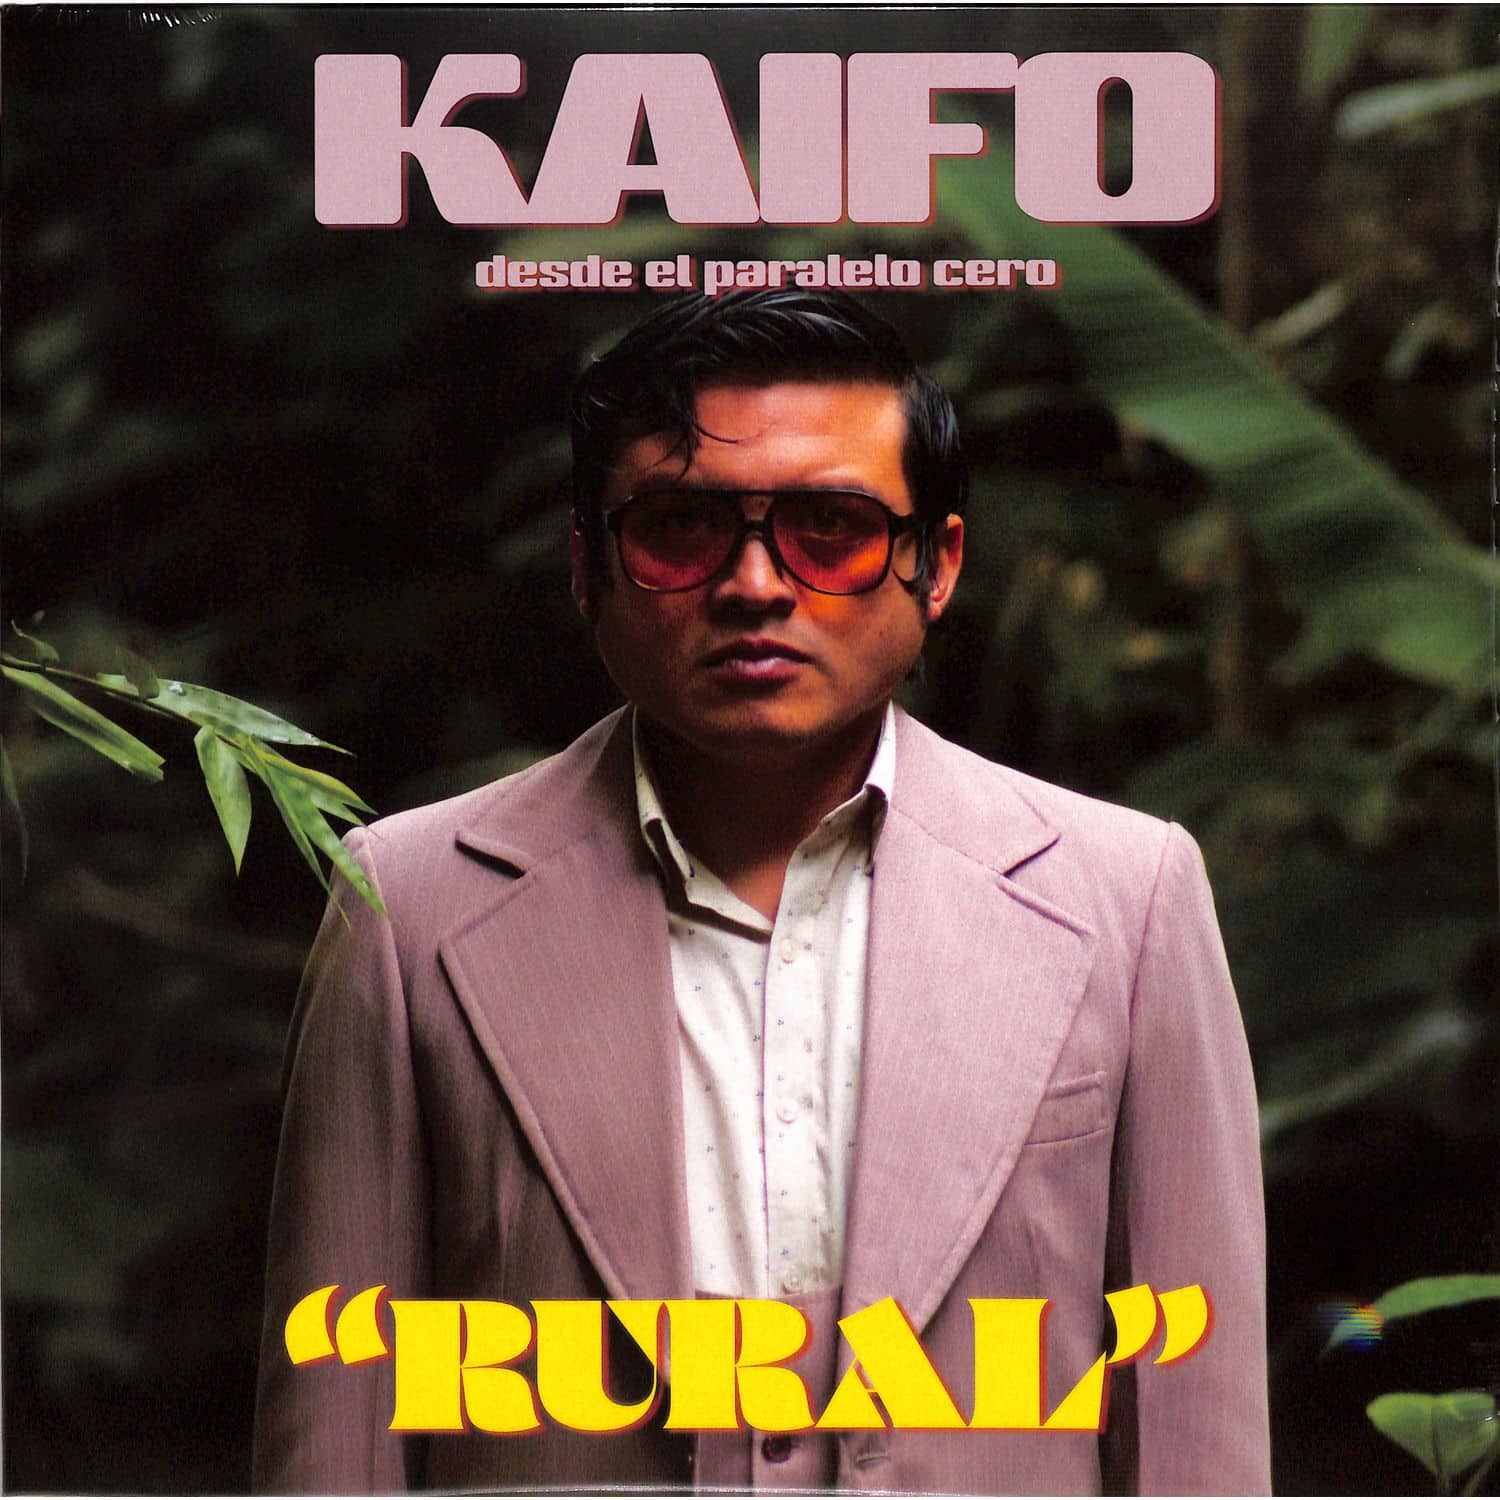 Kaifo - RURAL 